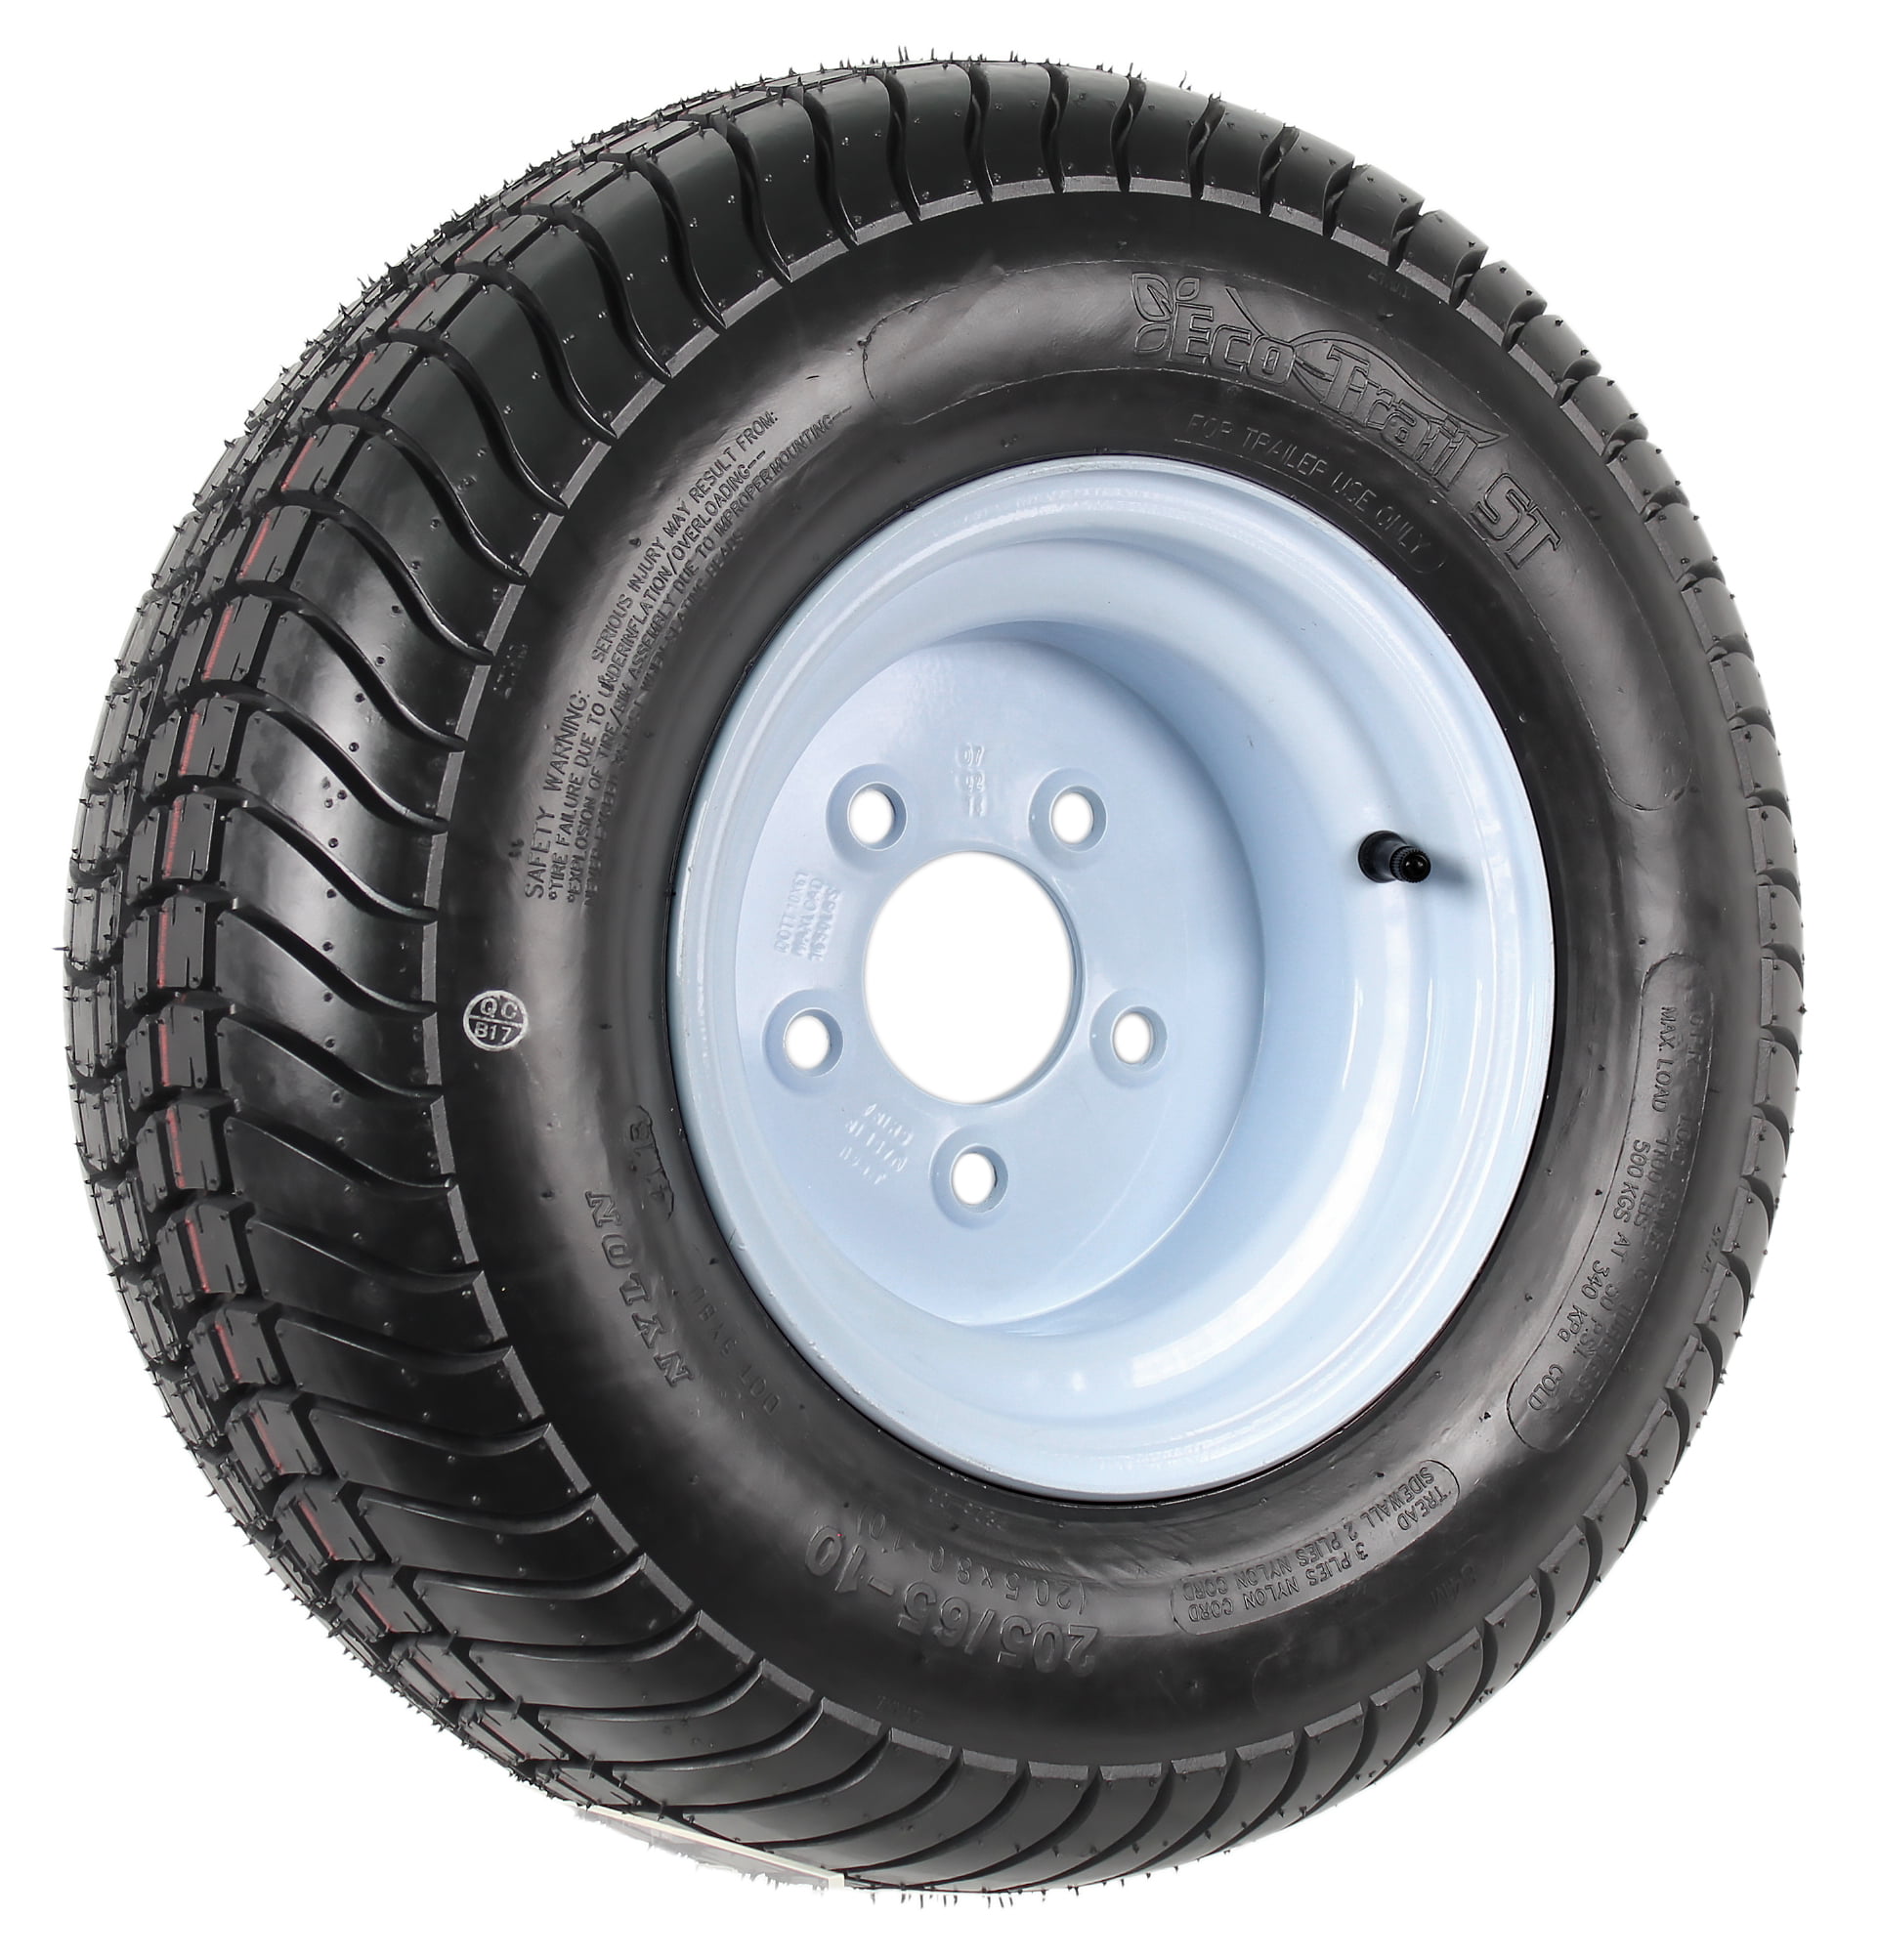 eCustomRim 2-Pack Utility Trailer Tires Rims 20.5X8-10 205/65-10 20.5X8.0-10 5 Lug E Galv 